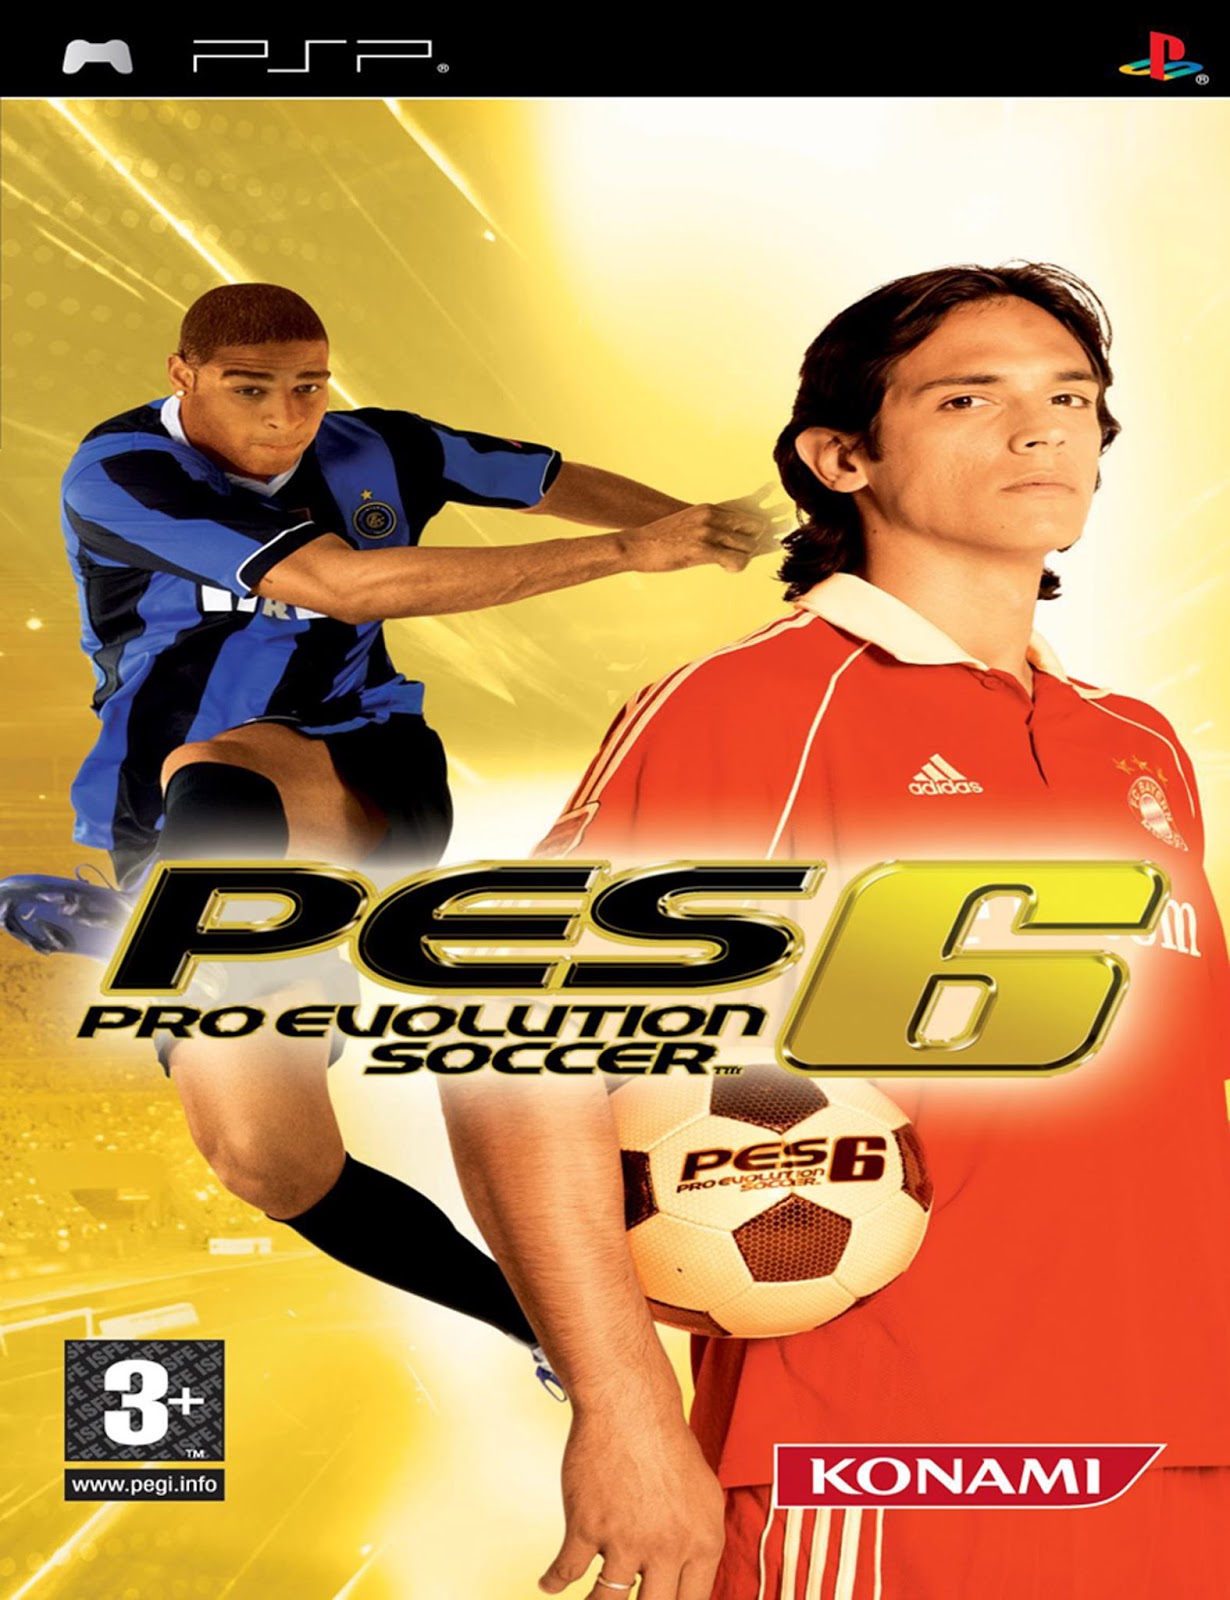 pro evolution soccer 6 pc download utorrent